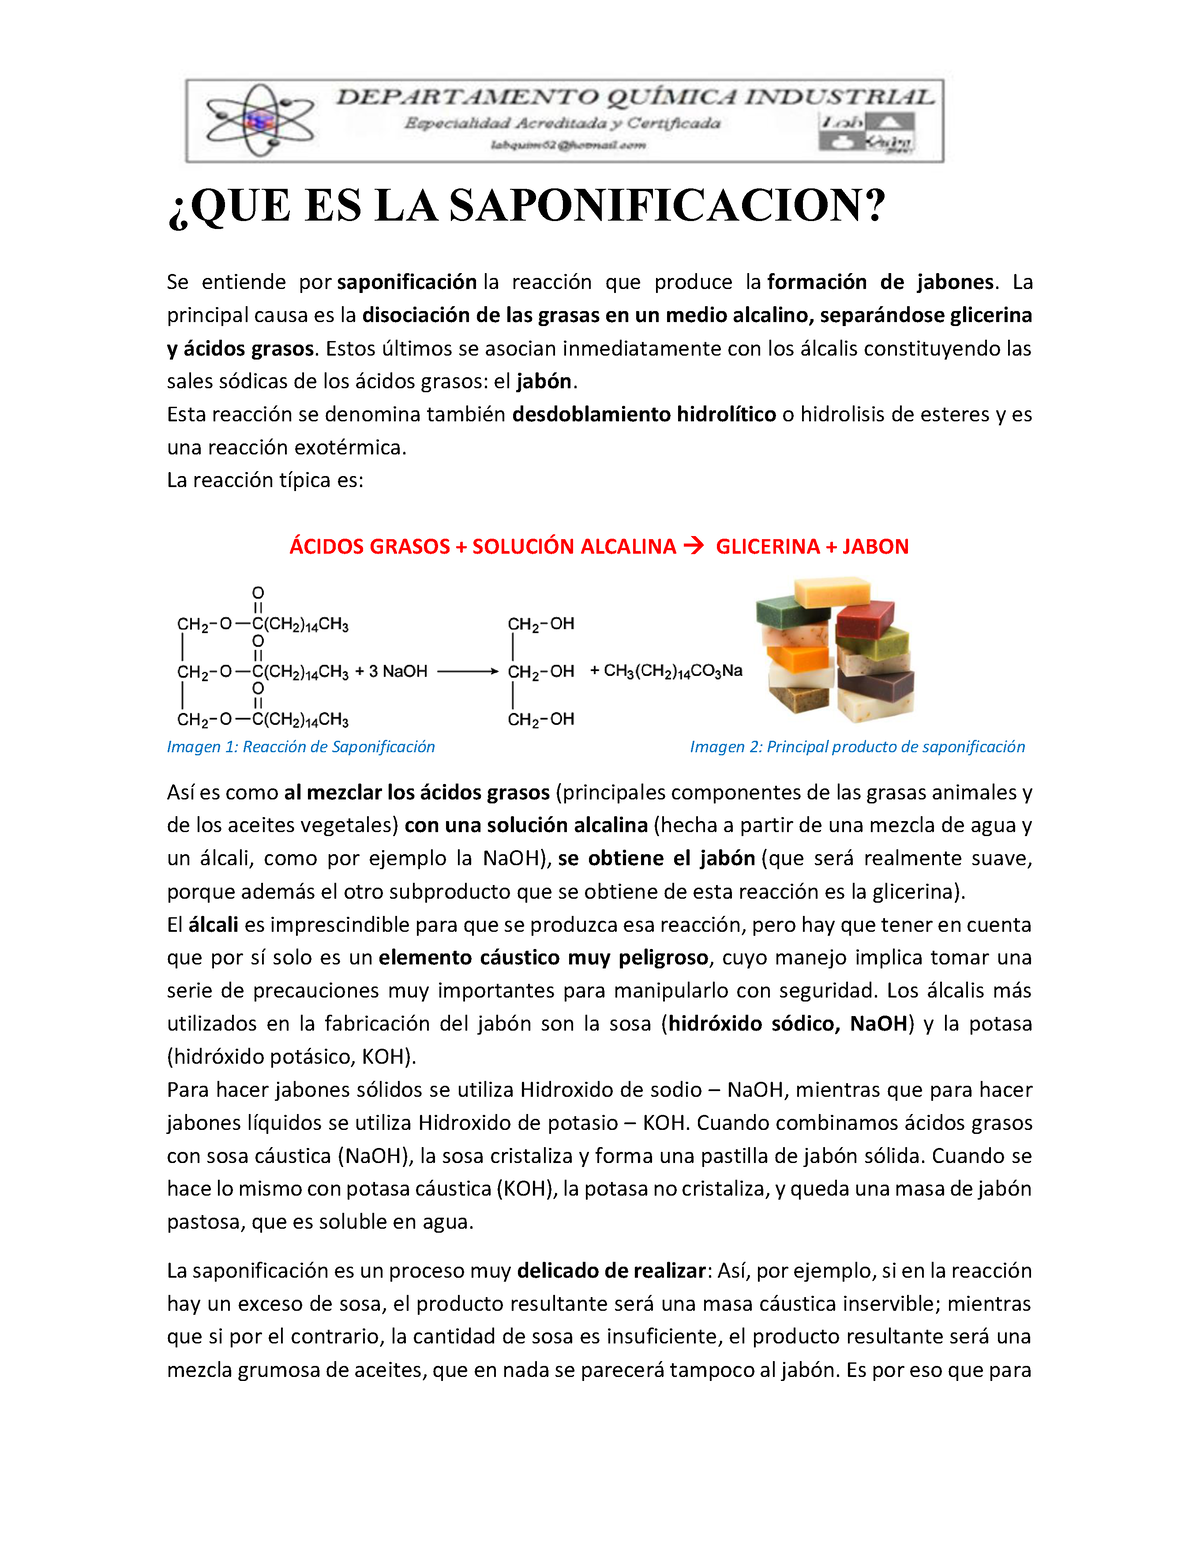 SAPONIFICACION con Soda Caustica + SUS PASOS PARA HACERLA